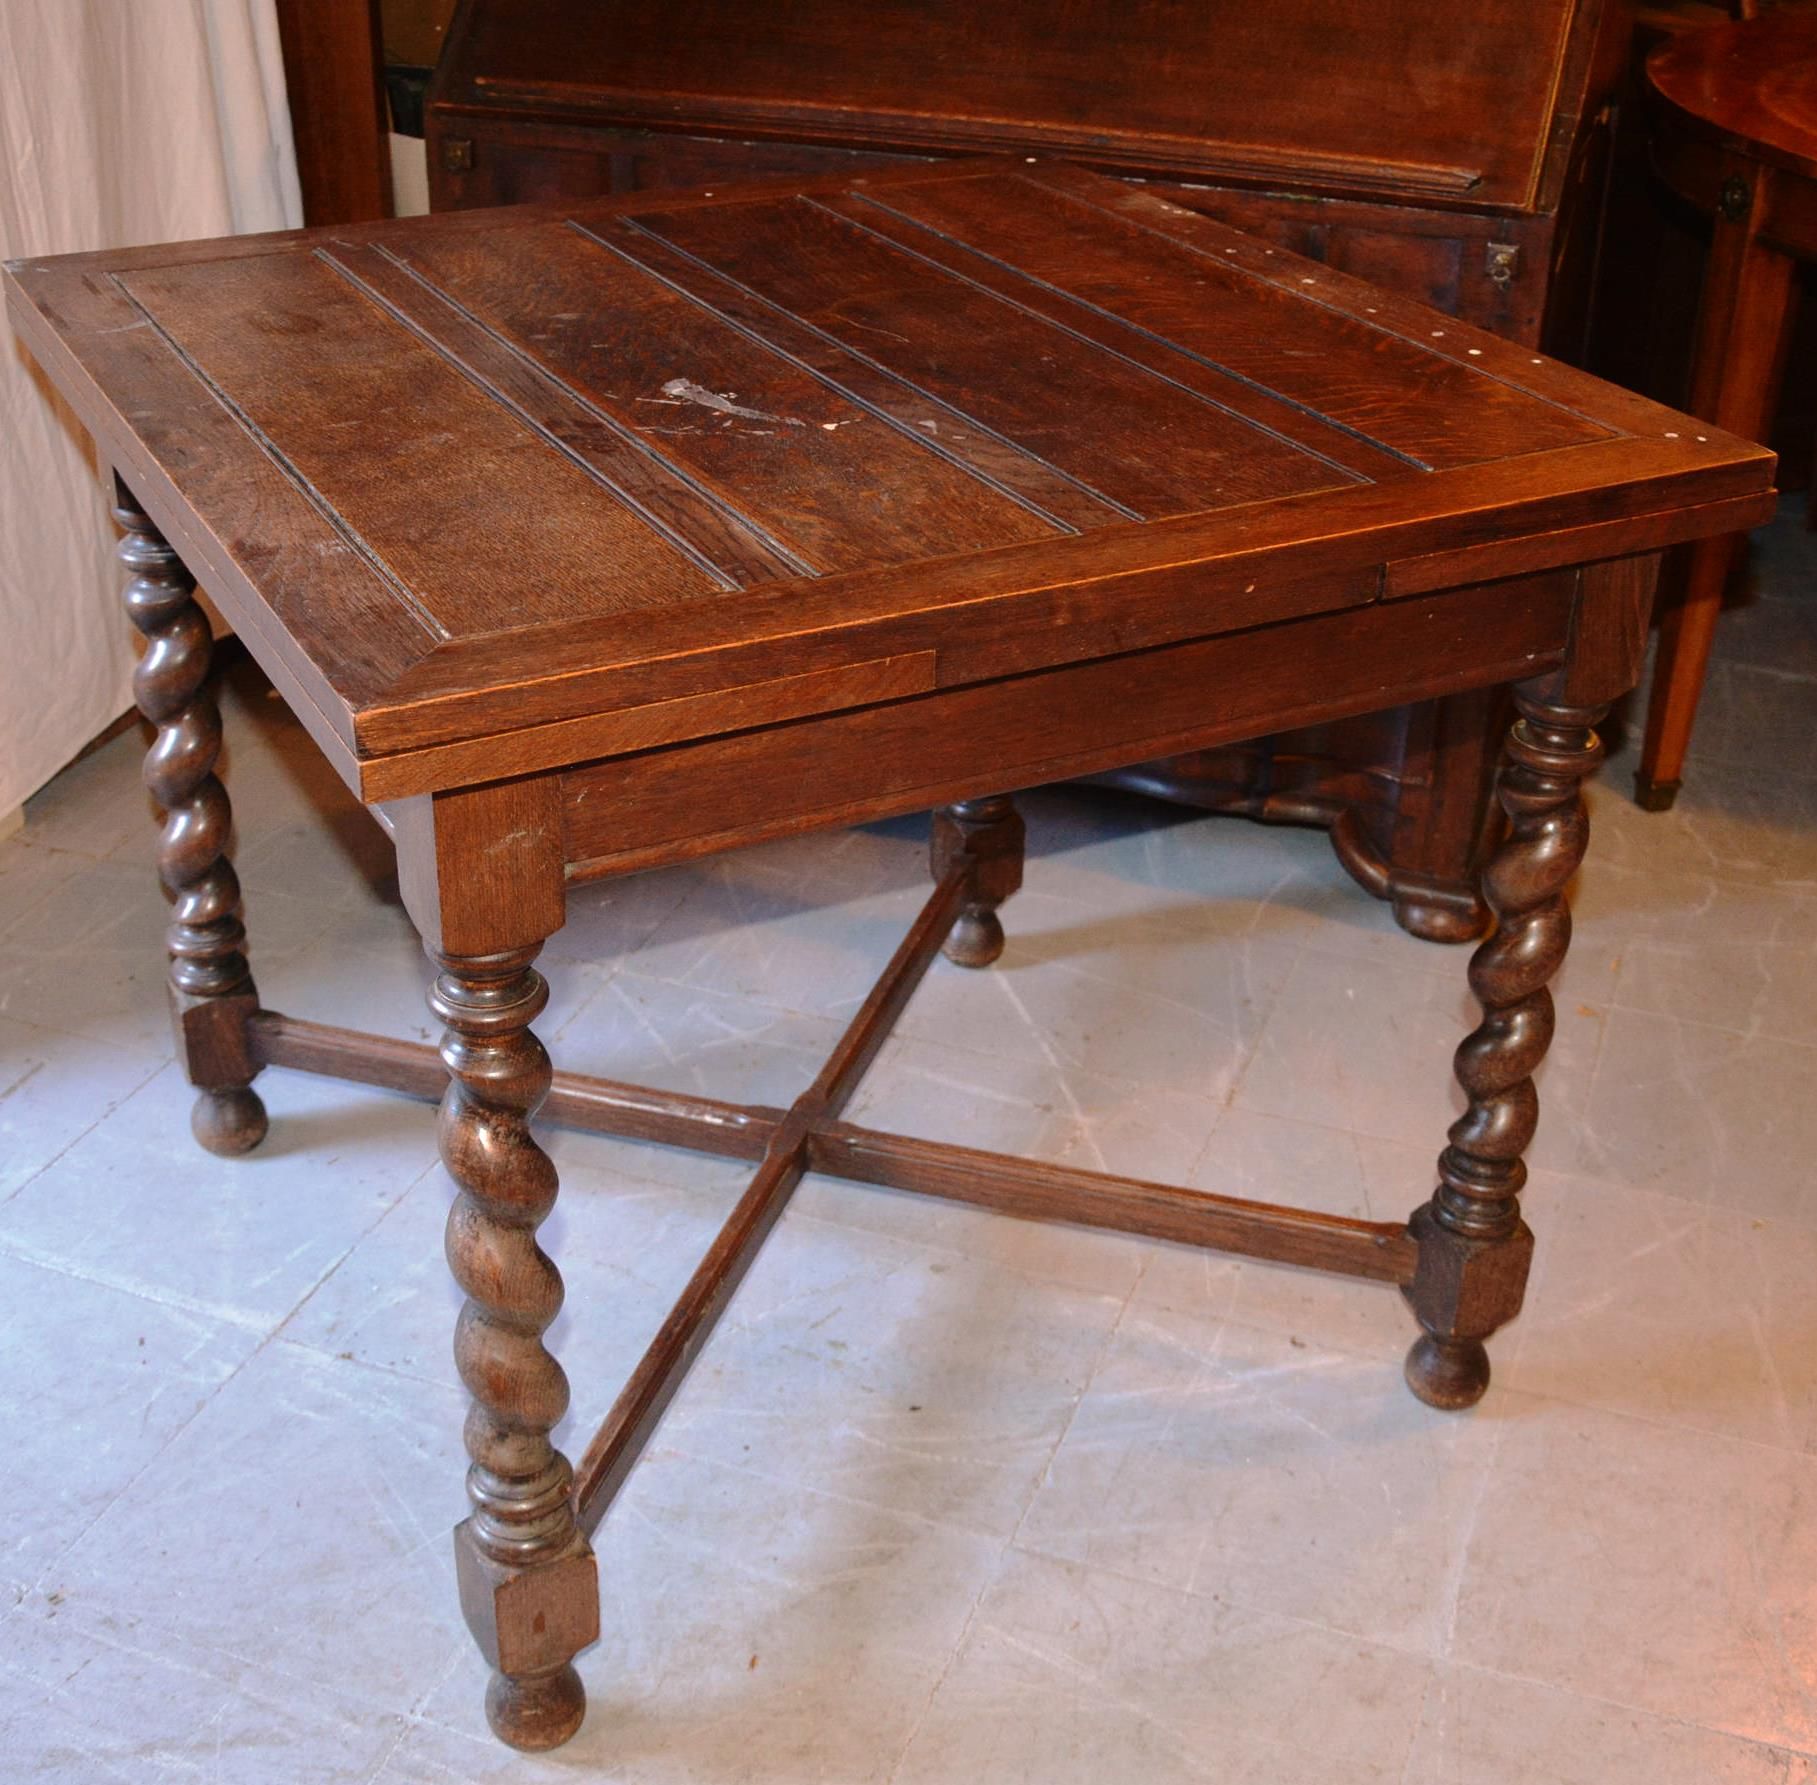 Petite table en chène 橡木小桌，有四个转弯的腿。

19世纪末/20世纪初。

尺寸：76厘米x90厘米x90厘米